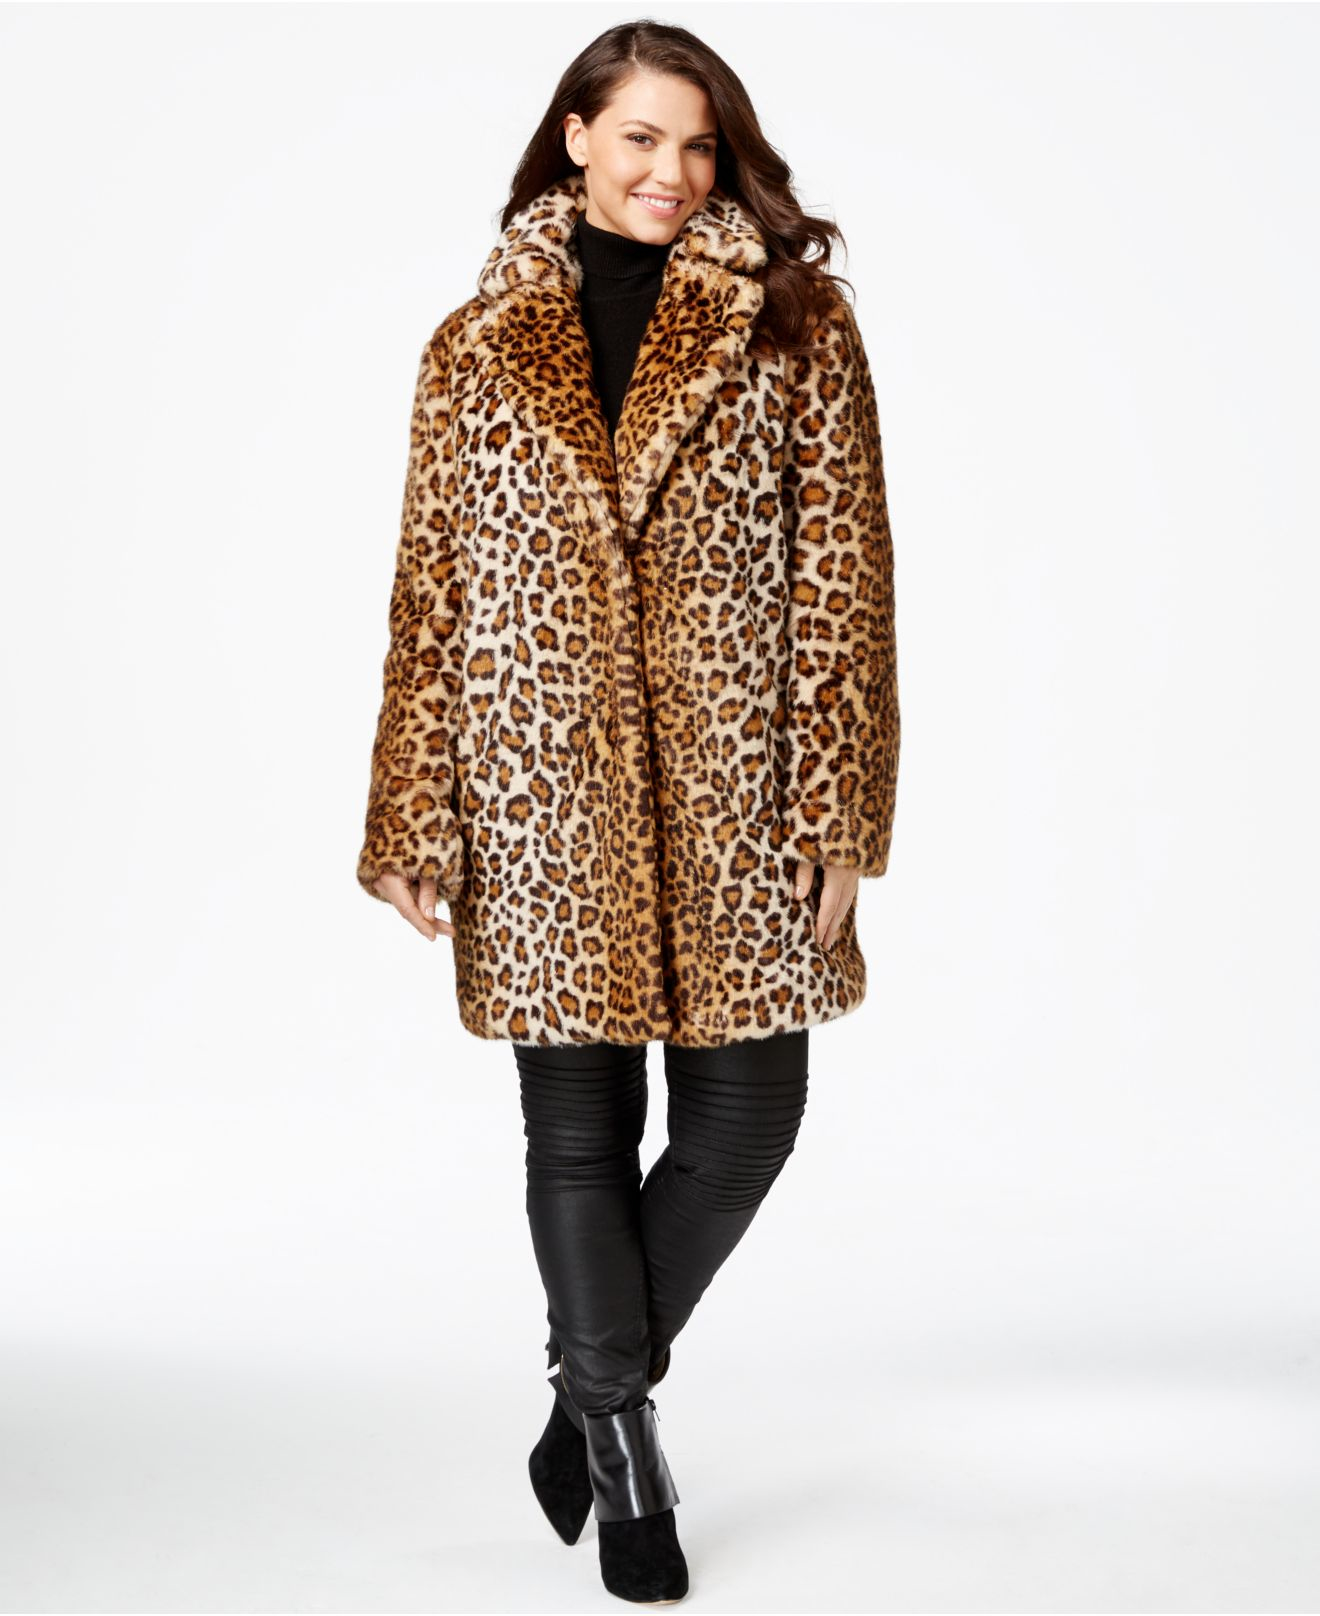 Barmherzig Erinnern ein Experiment durchführen plus size leopard coat ...